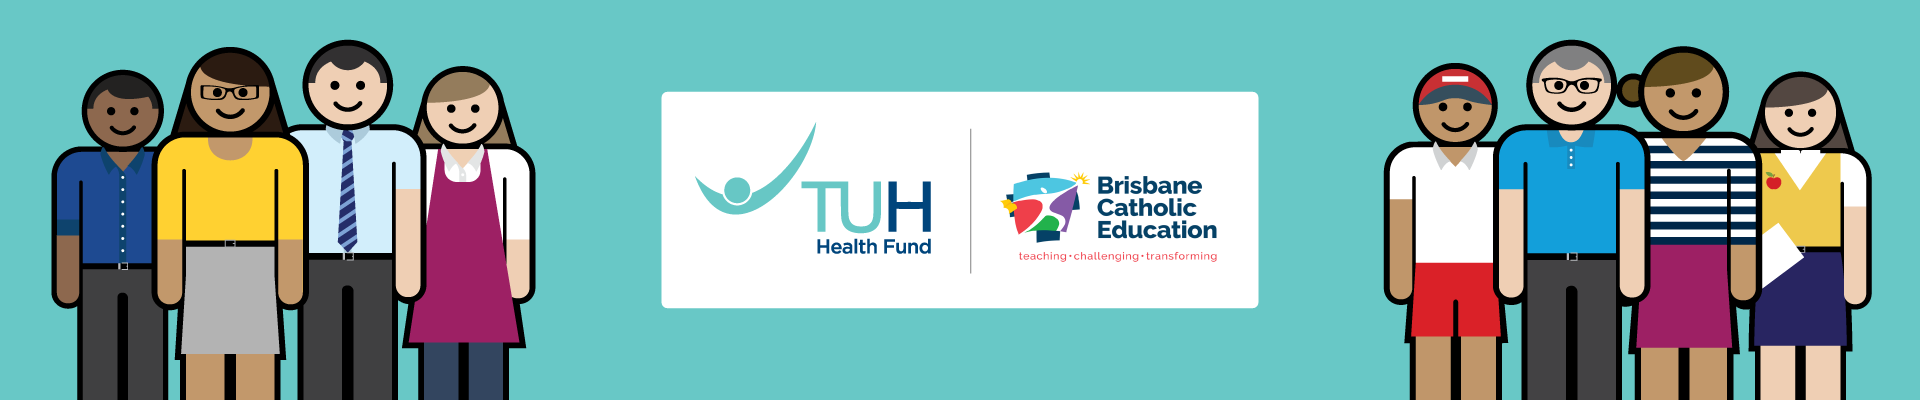 TUH health fund and Brisbane Catholic Education promotion